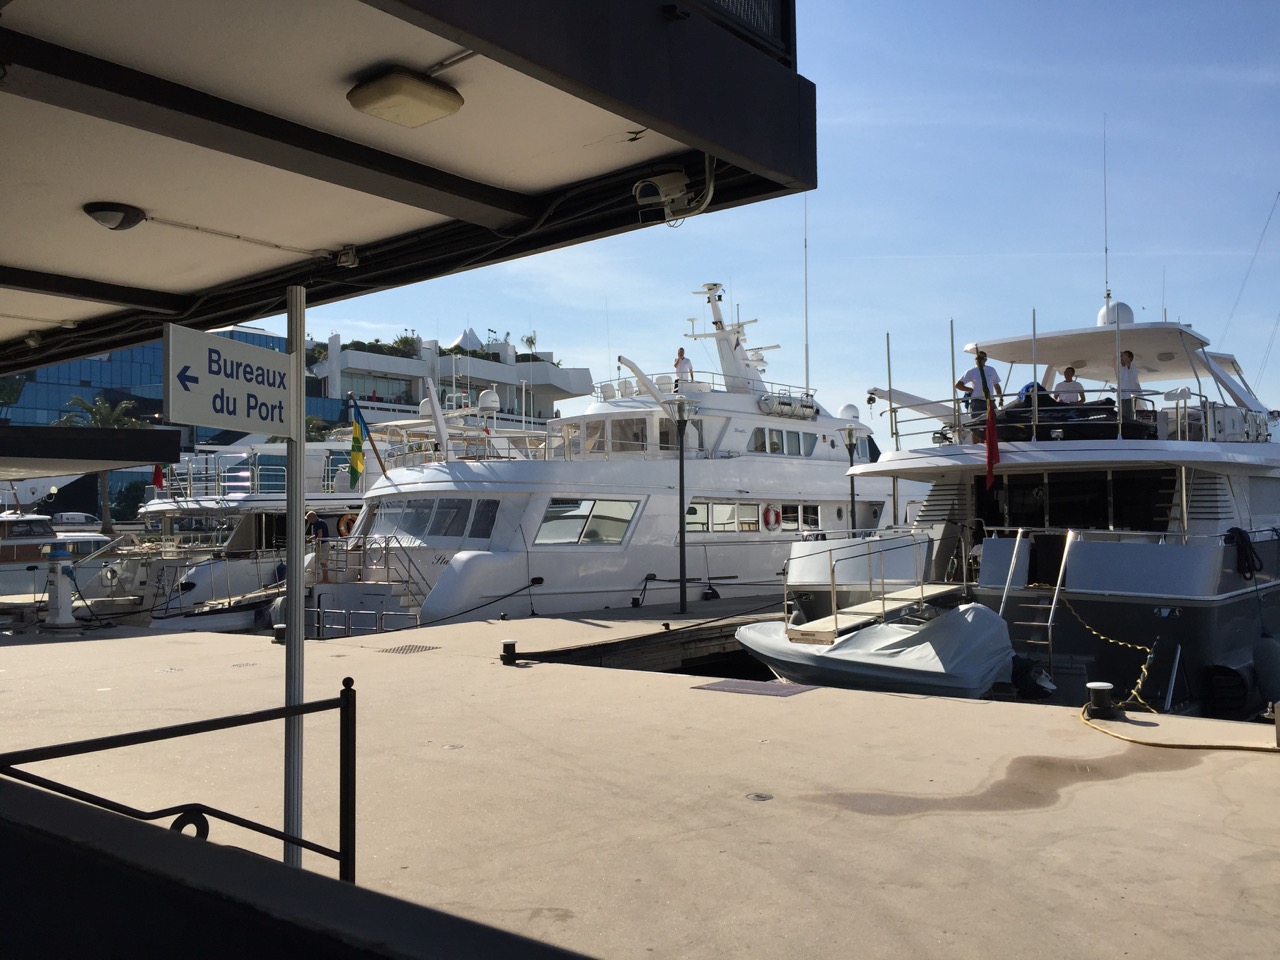 The Bureau de Port, Cannes 2015